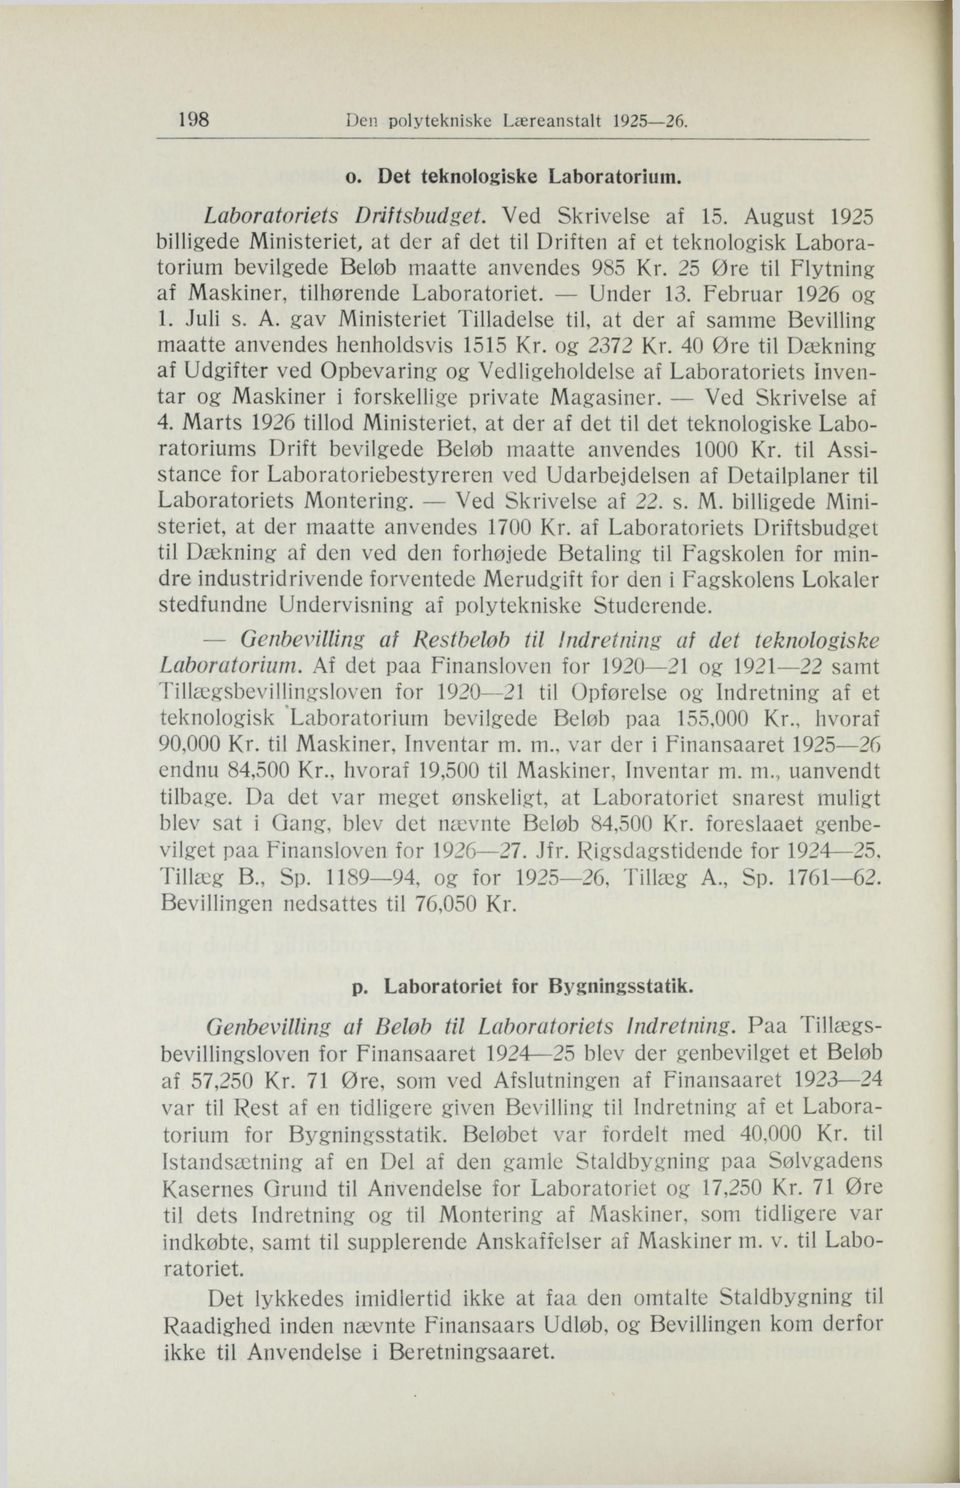 Februar 1926 og 1. Juli s. A. gav Ministeriet Tilladelse til, at der af samme Bevilling maatte anvendes henholdsvis 1515 Kr. og 2372 Kr.